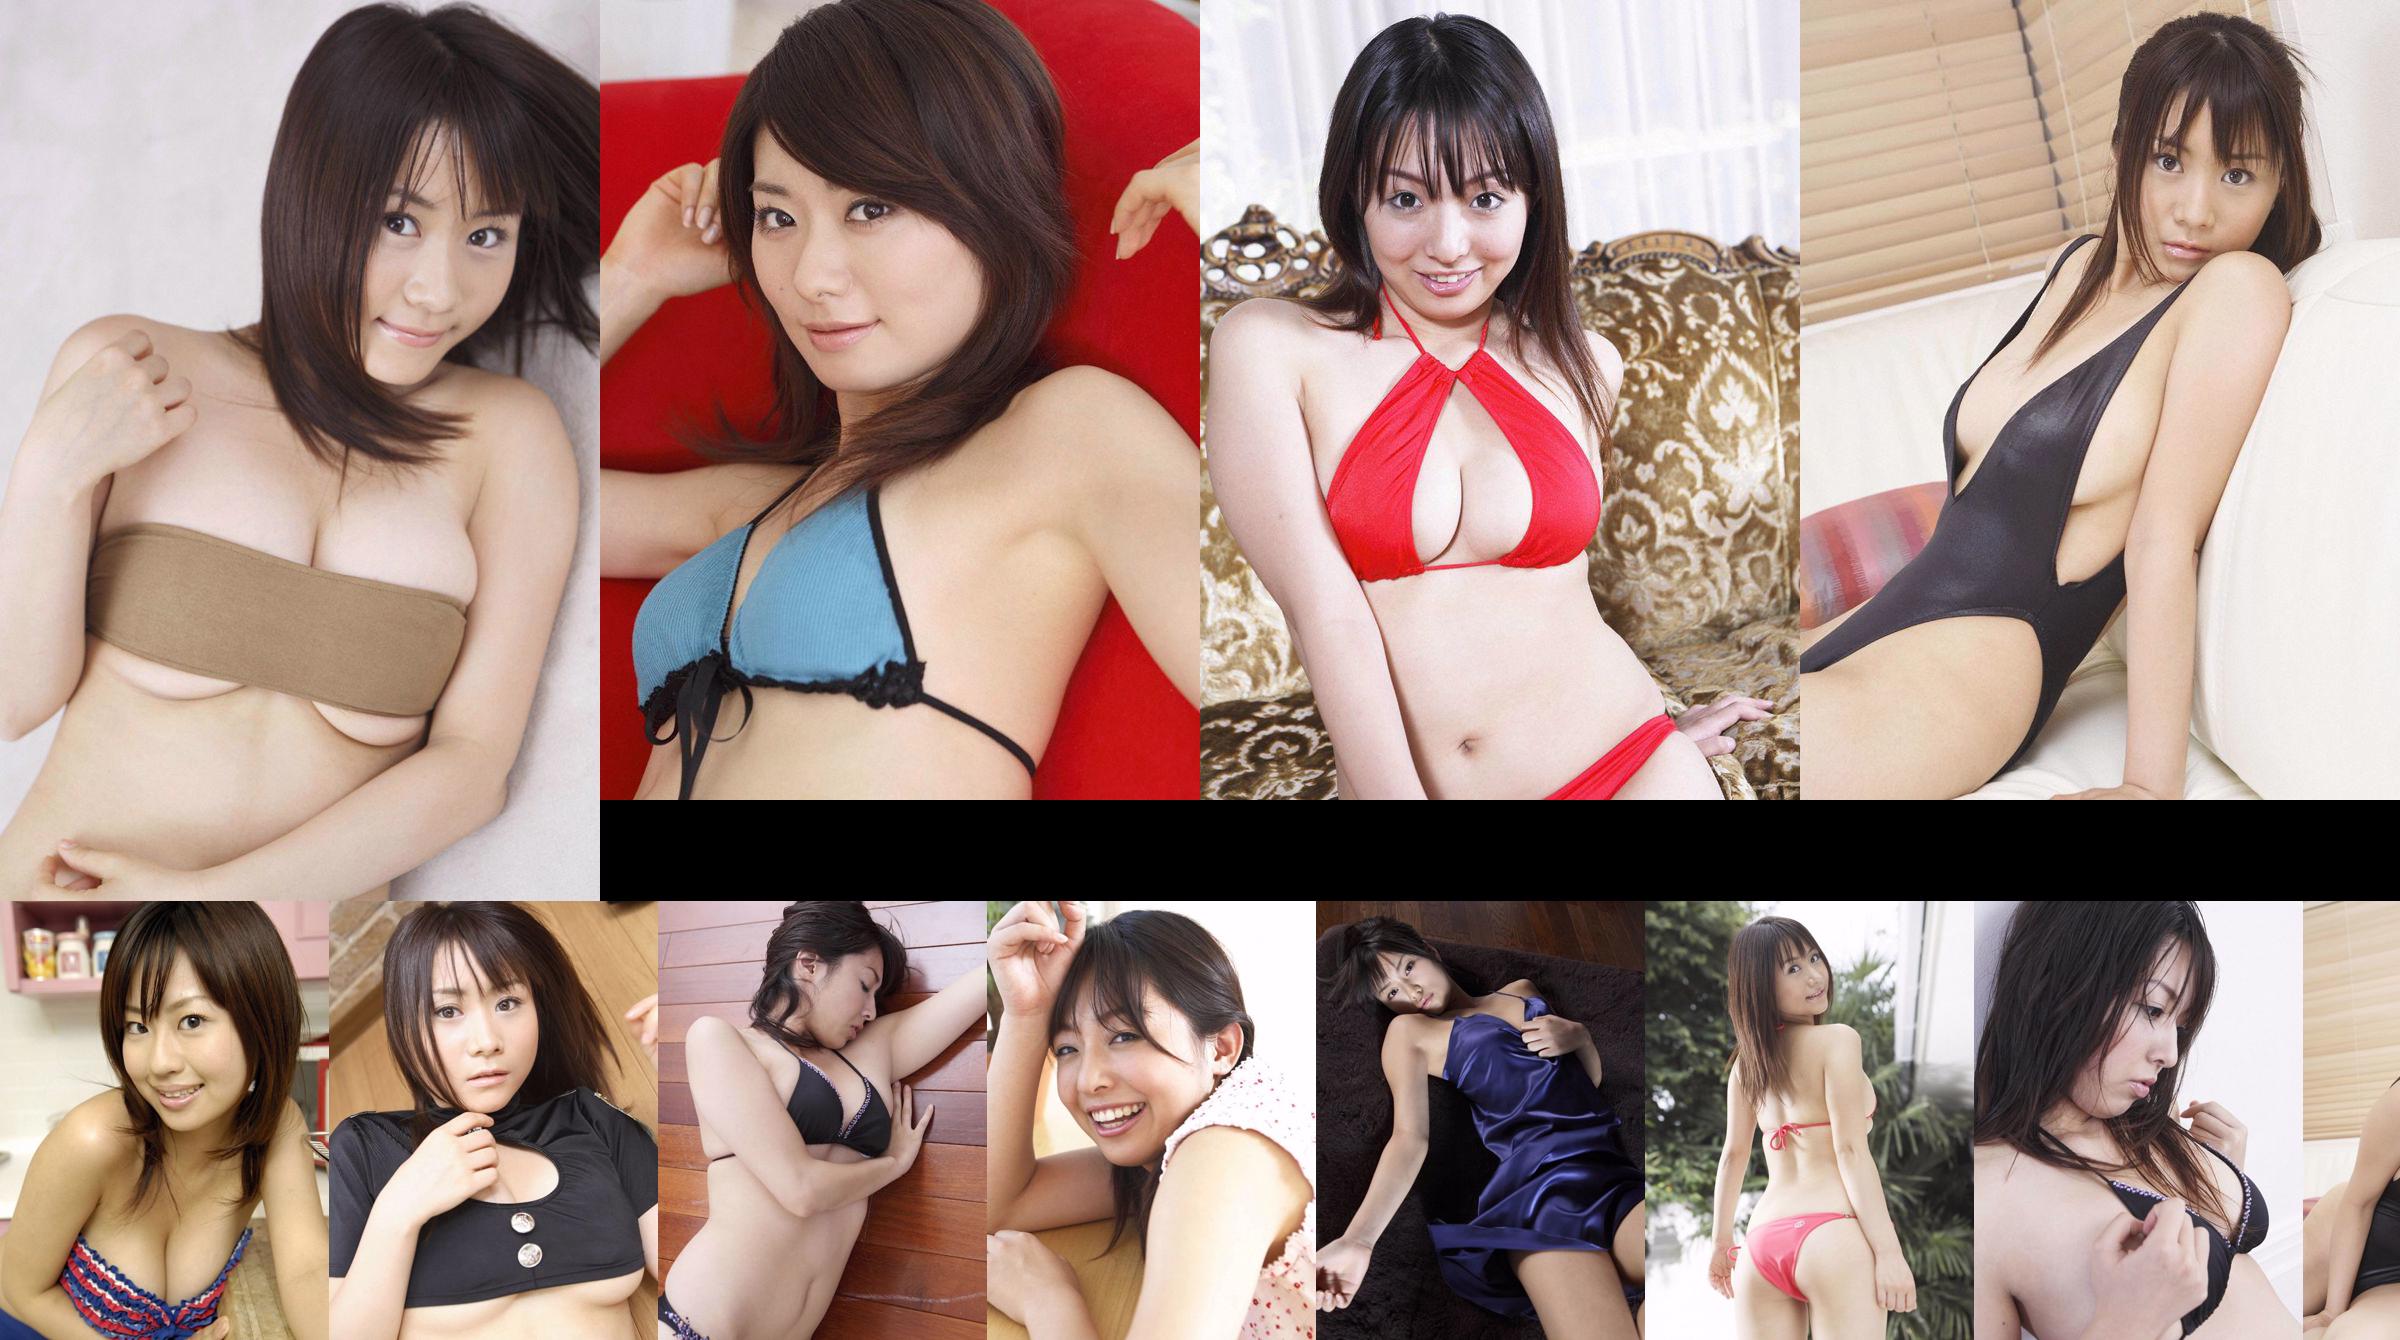 [Wanibooks] NO.37 Ai Arakawa, Hitomi Kaikawa, Hitomi Kitamura, Naomi I, Chii Matsuda Photo Collection No.b5923b Trang 4